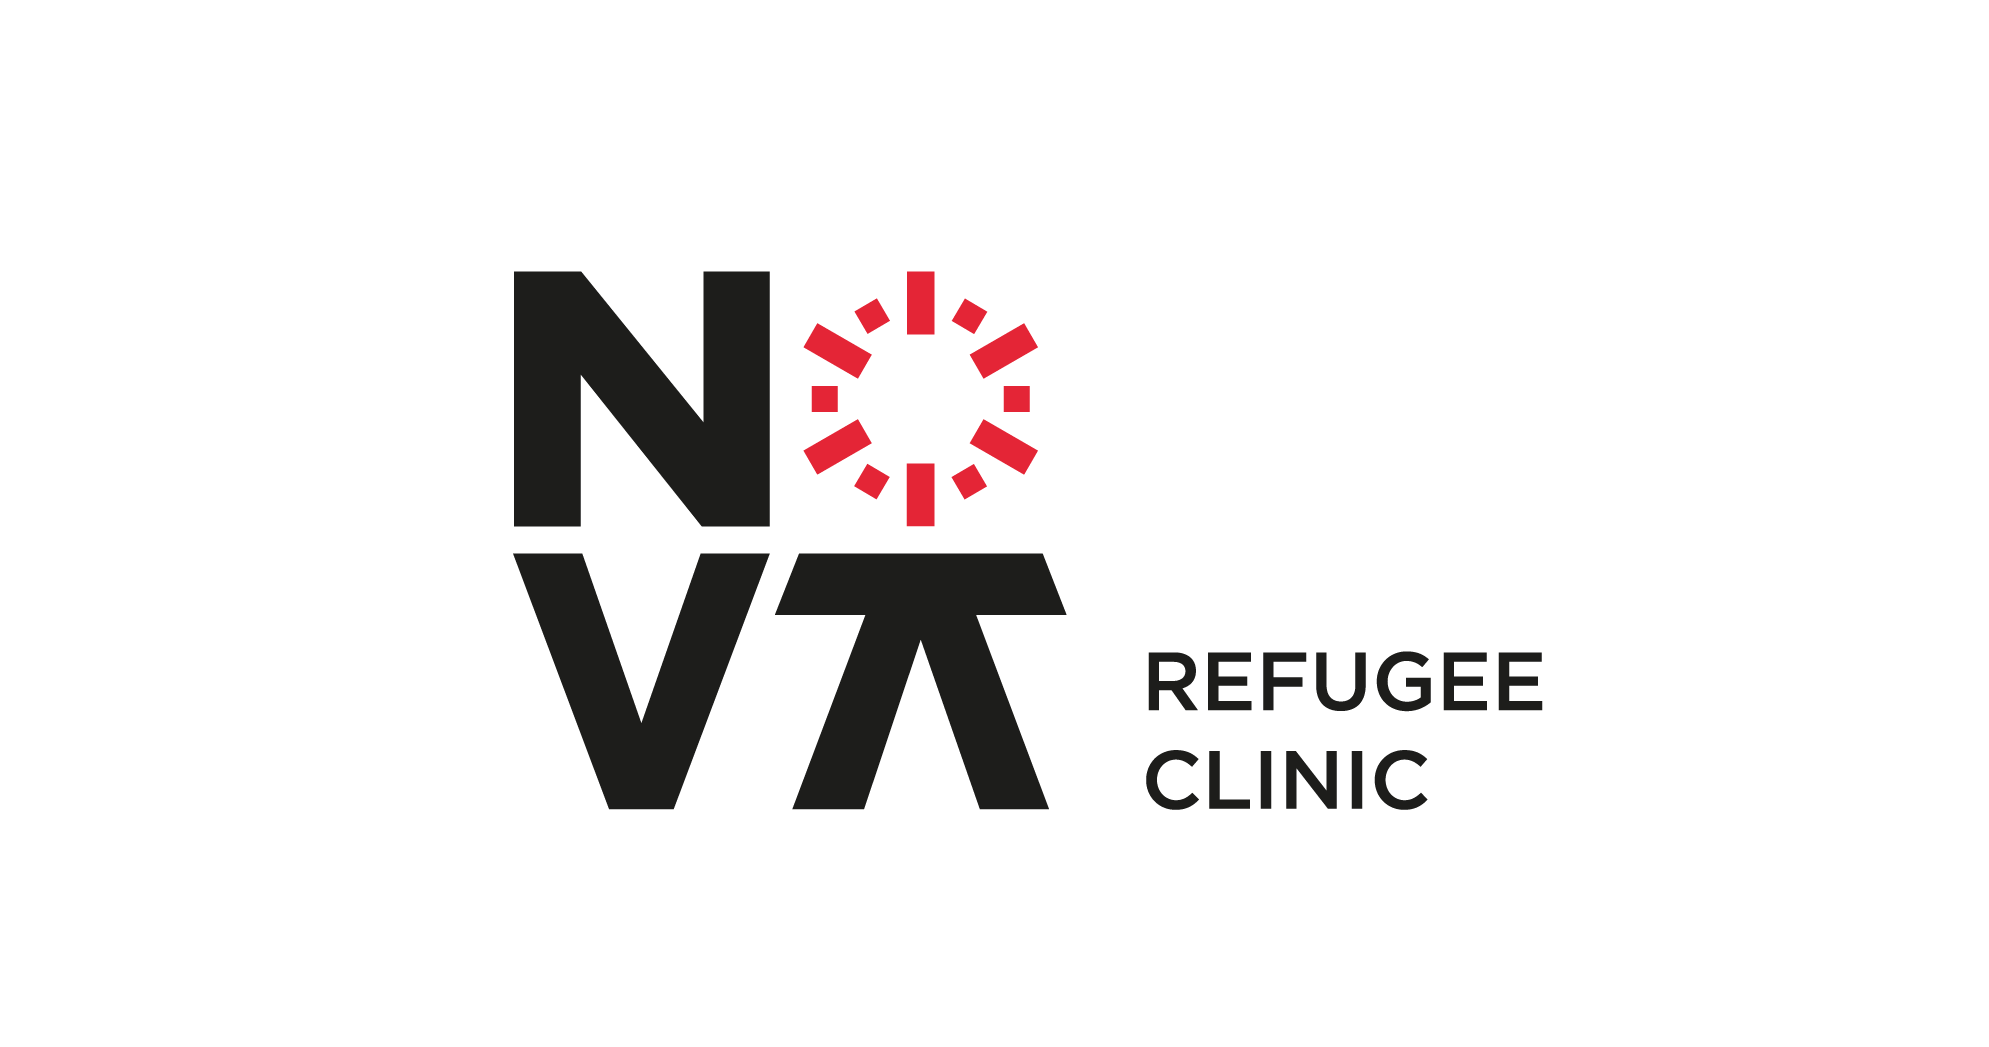 NOVA Refugee and Migration Clinic